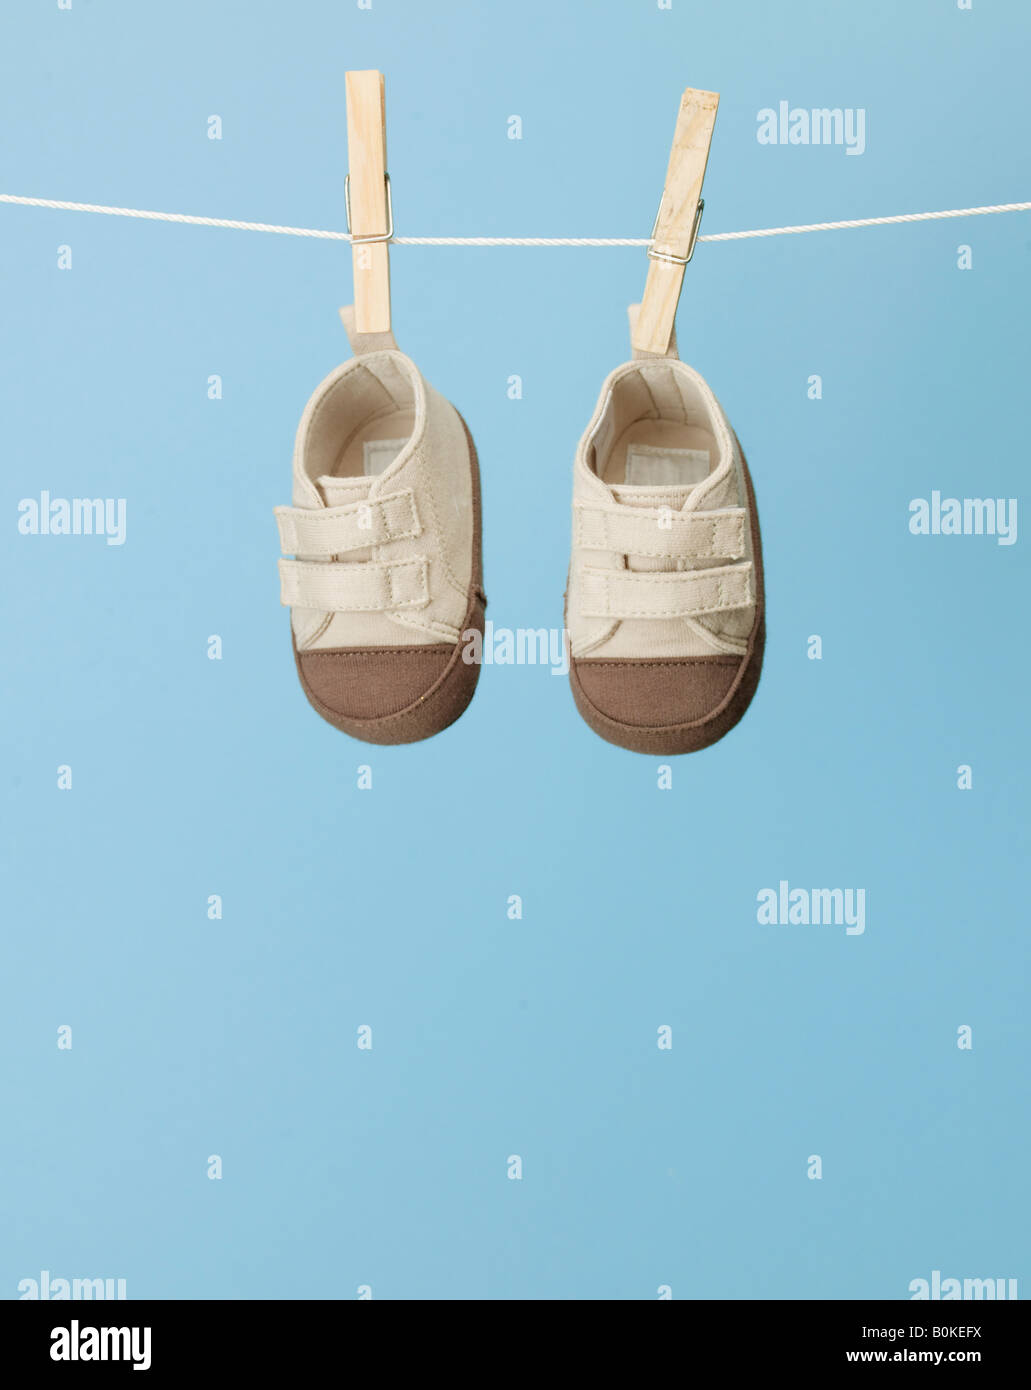 Geología Más bien Familiarizarse Bebé zapatillas sobre línea de ropa Fotografía de stock - Alamy